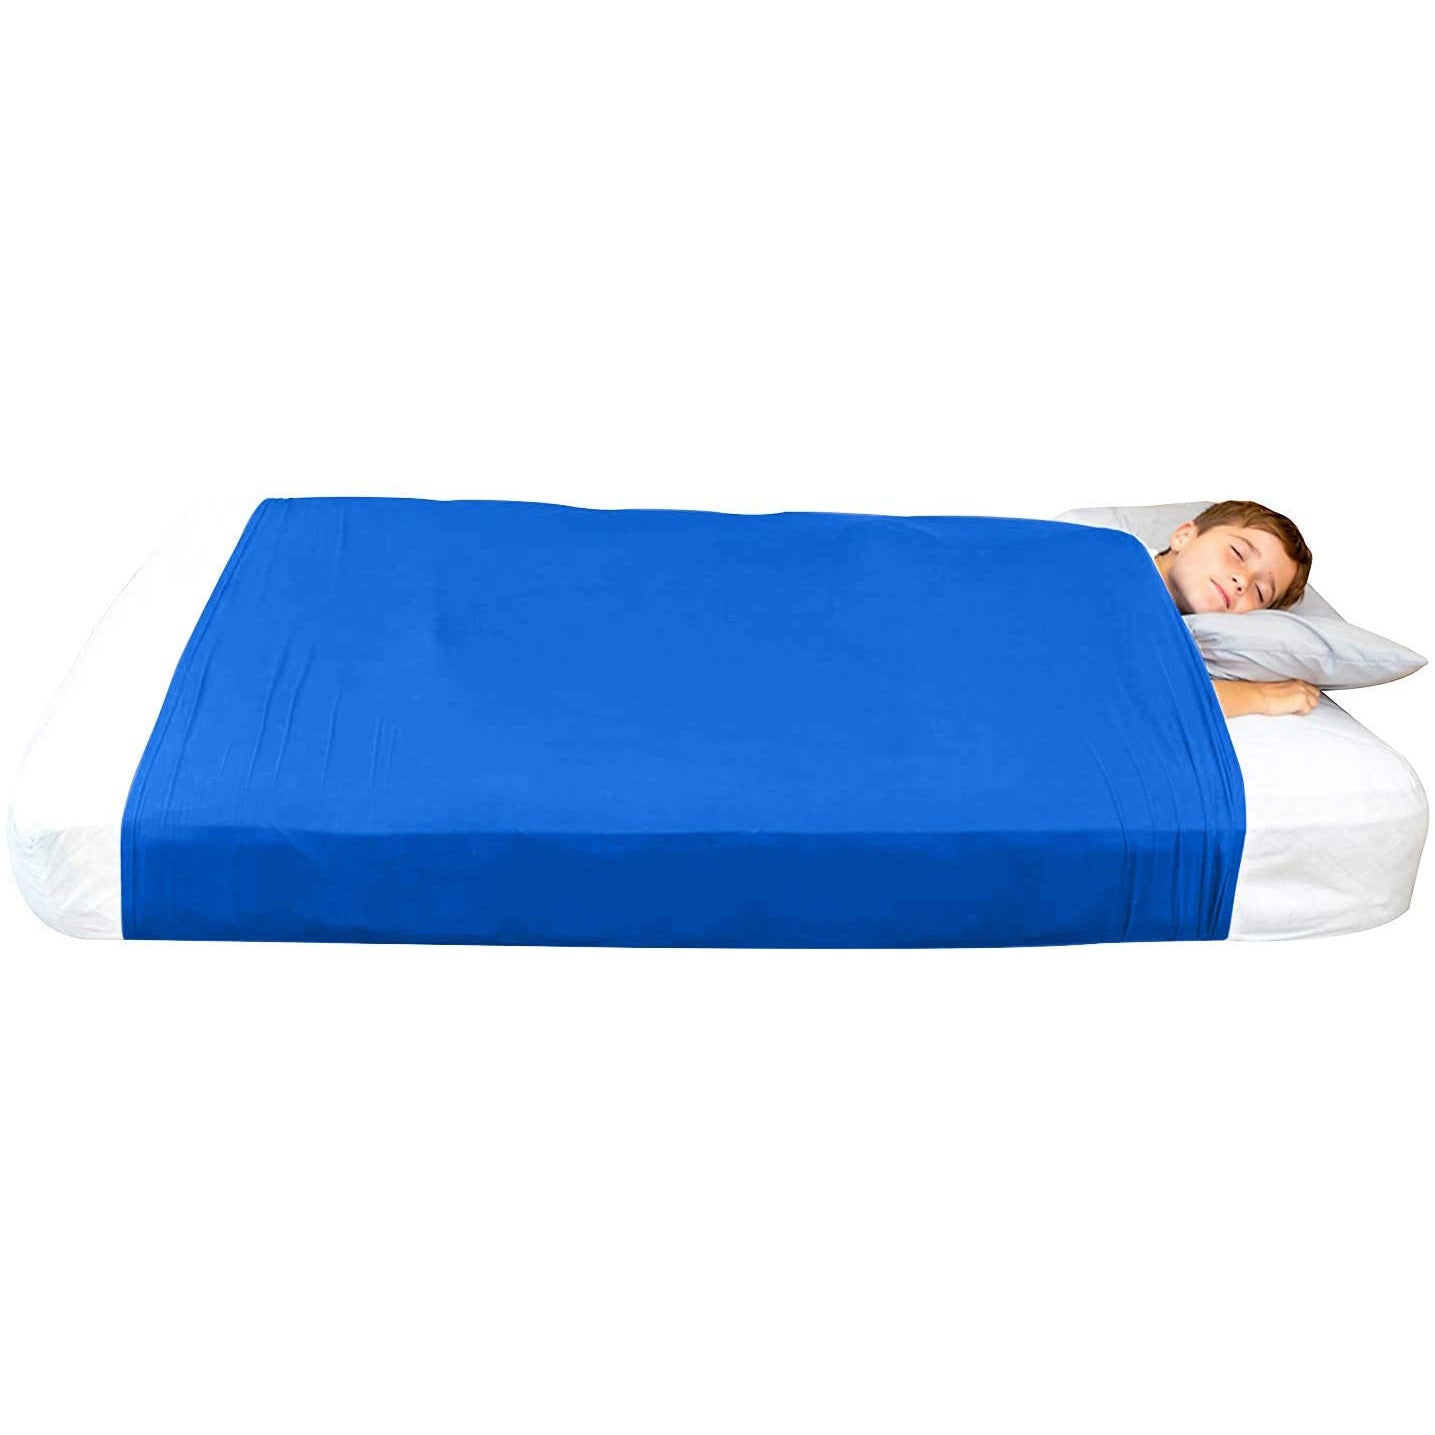 Children's sensory compression bed sheet blanket